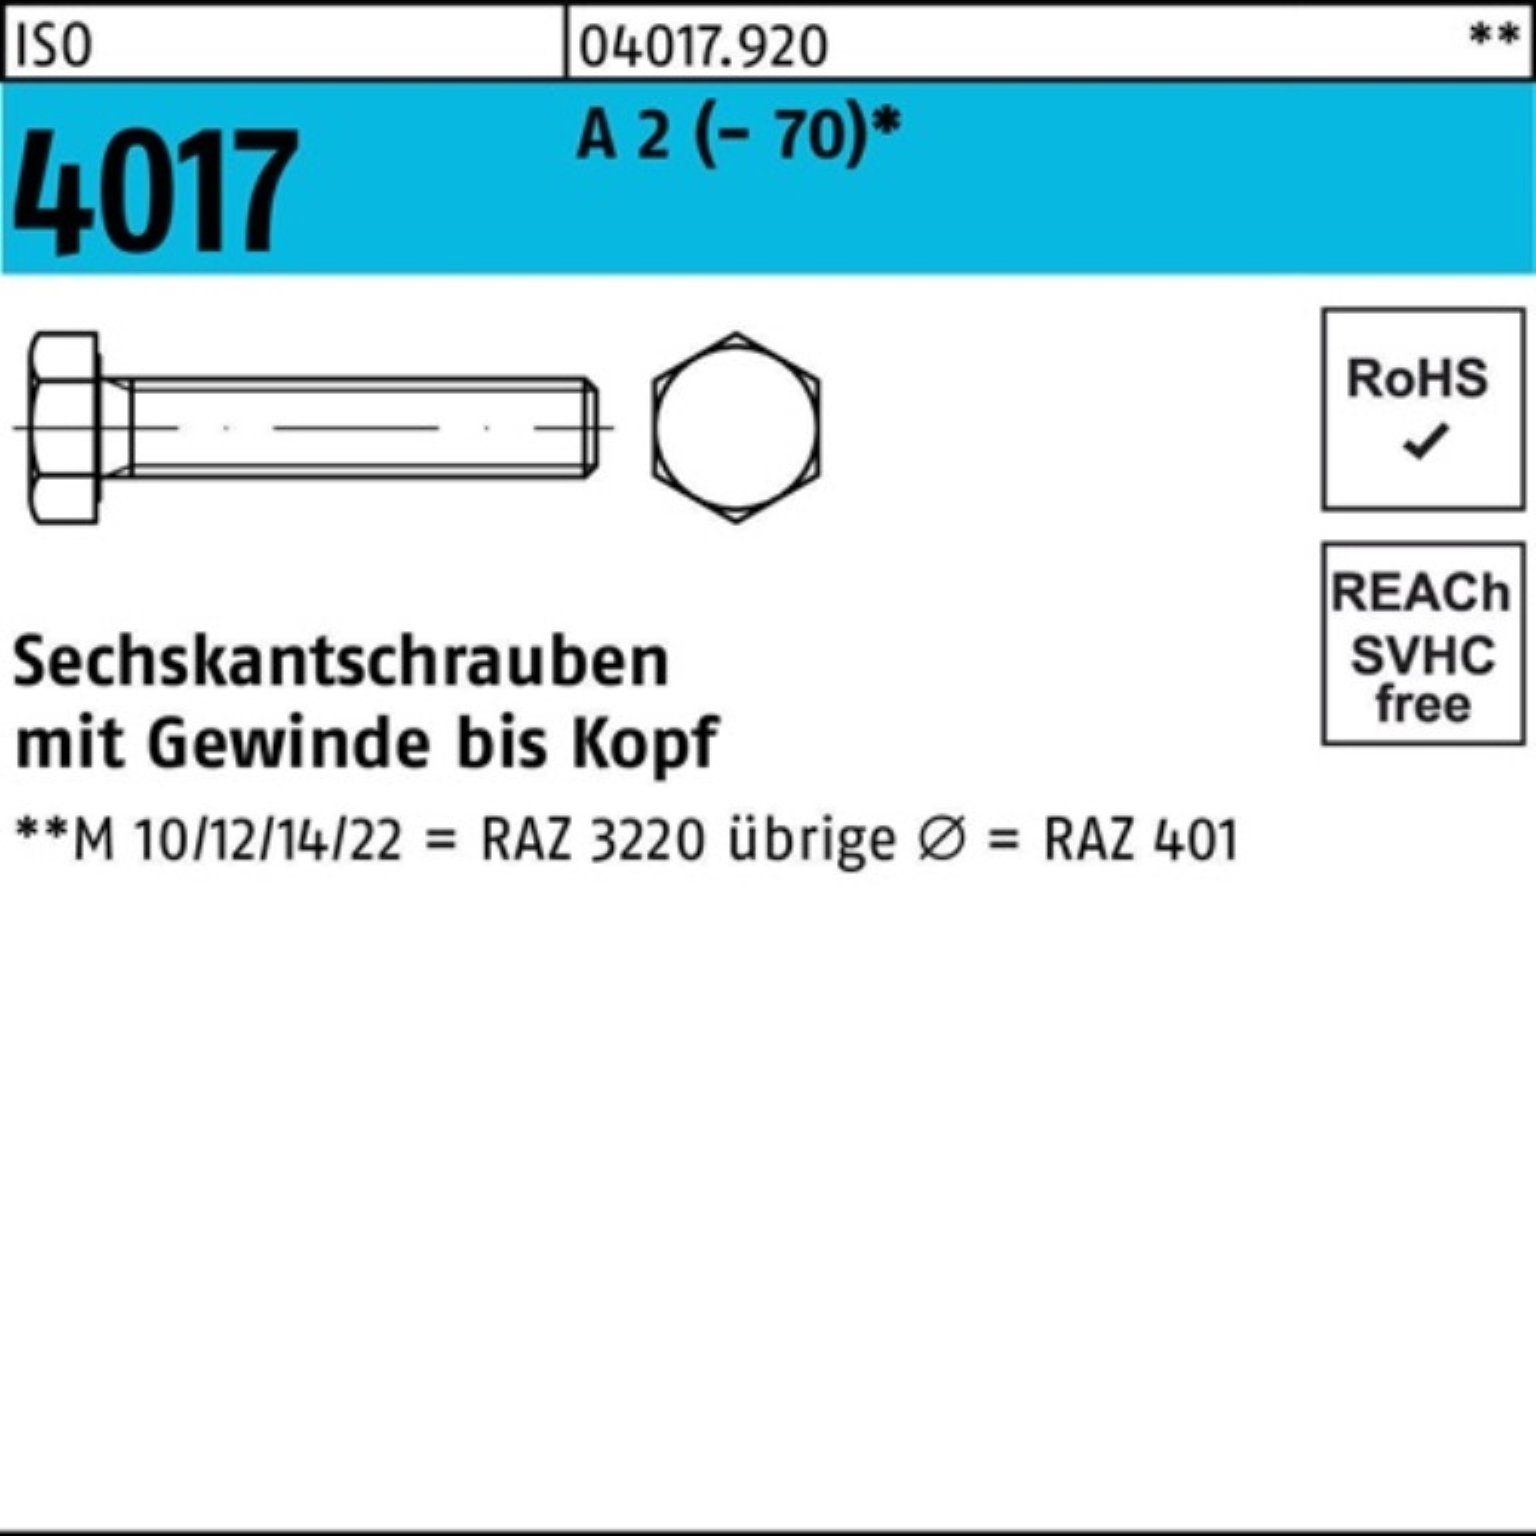 Bufab A VG Stück Sechskantschraube M5x Pack 22 200er 200 (70) Sechskantschraube 2 4017 ISO